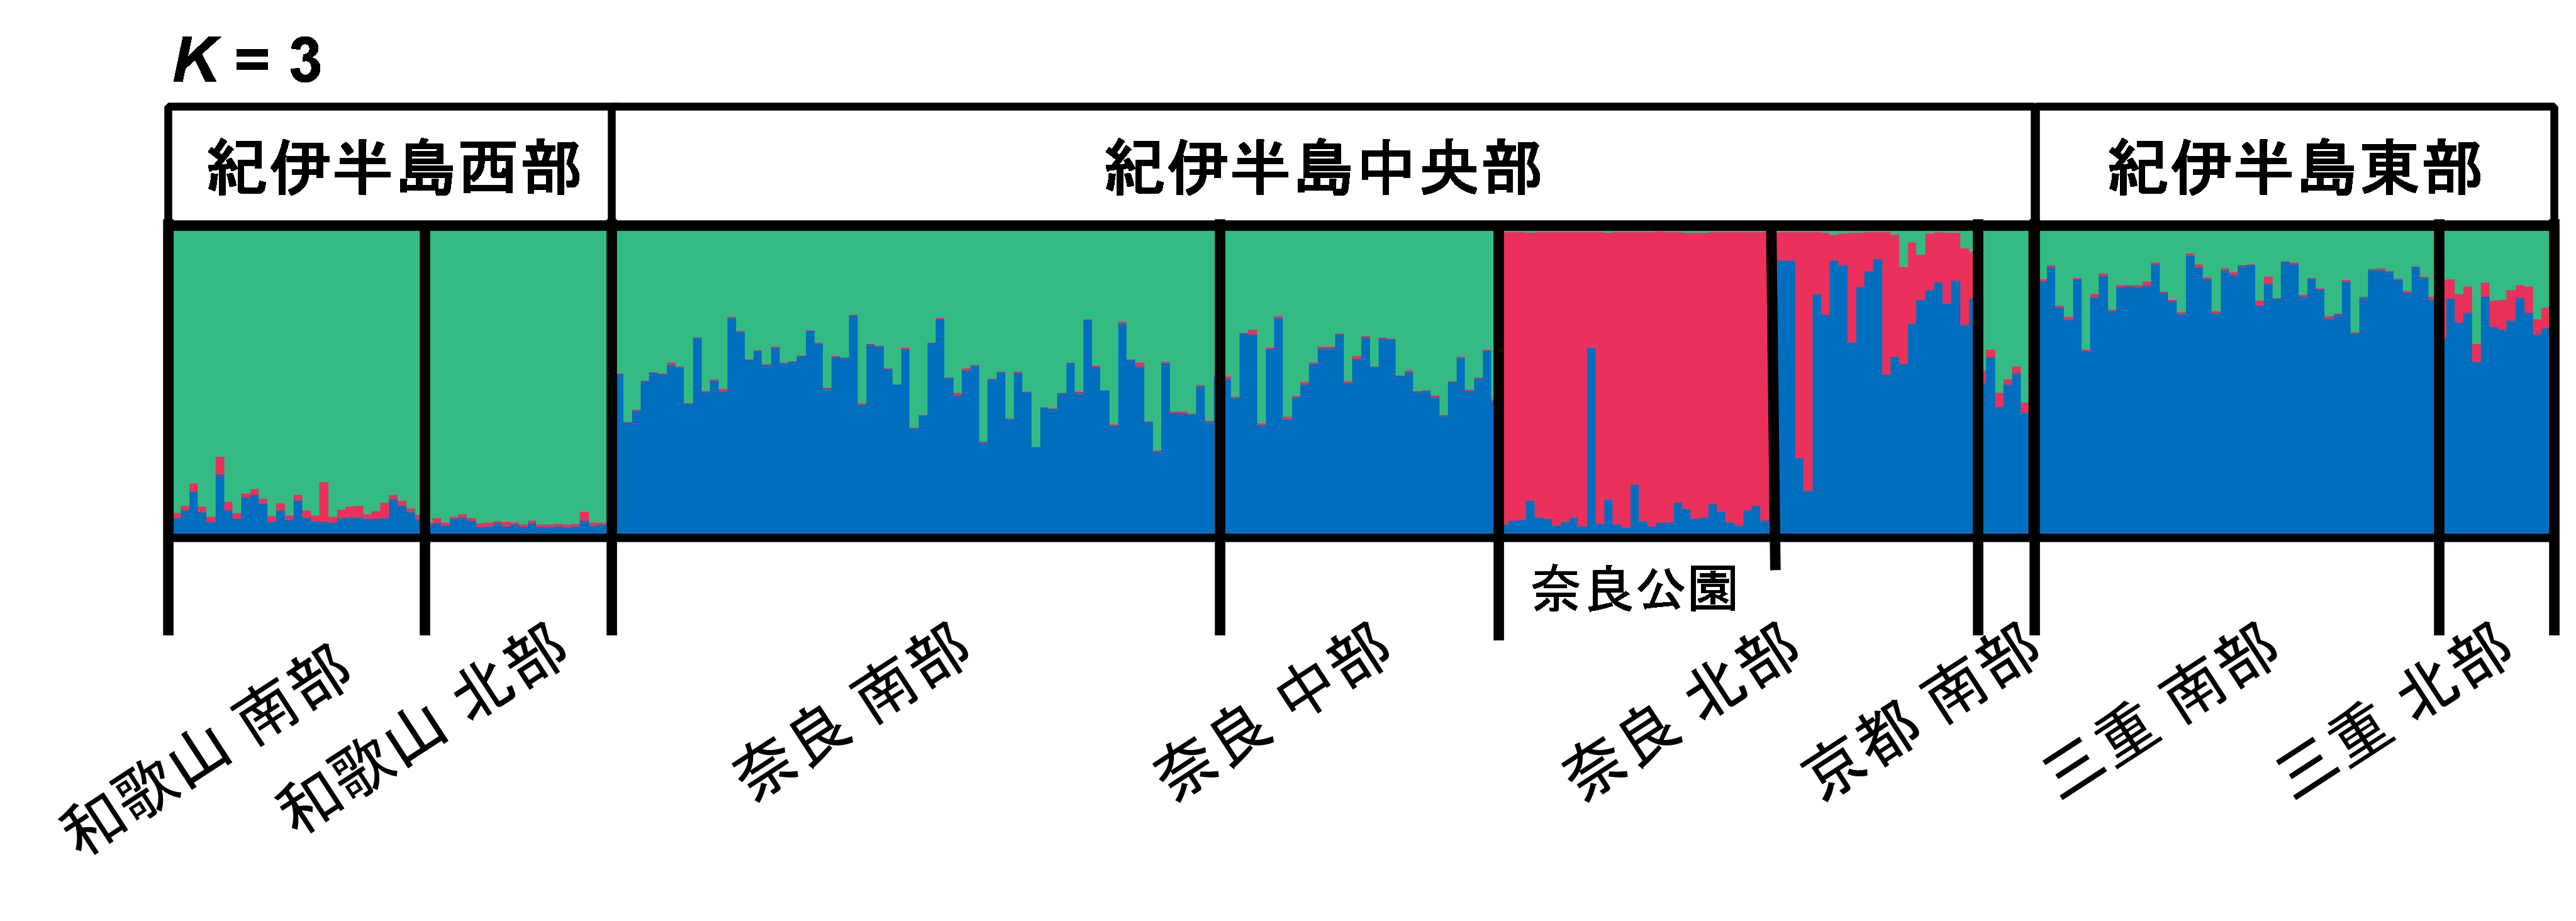 図4. 核SSR を使用した集団構造解析の結果。集団構造解析は各個体の遺伝的組成を示す棒グラフ集合であり、各個体が3 つの遺伝的グループに属する確率を示している。奈良公園では赤の集団に、西部では緑の集団に、東部では青の集団に帰属する確率が高い個体が多いことが分かる。の画像